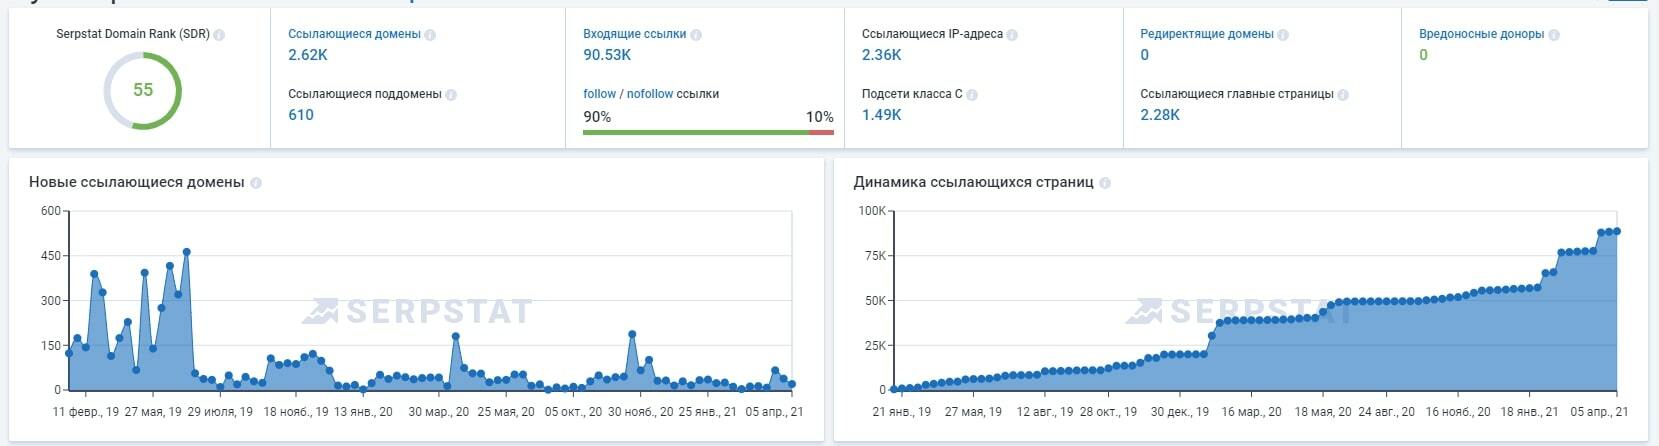 Ссылающиеся домены и страницы в Serpstat